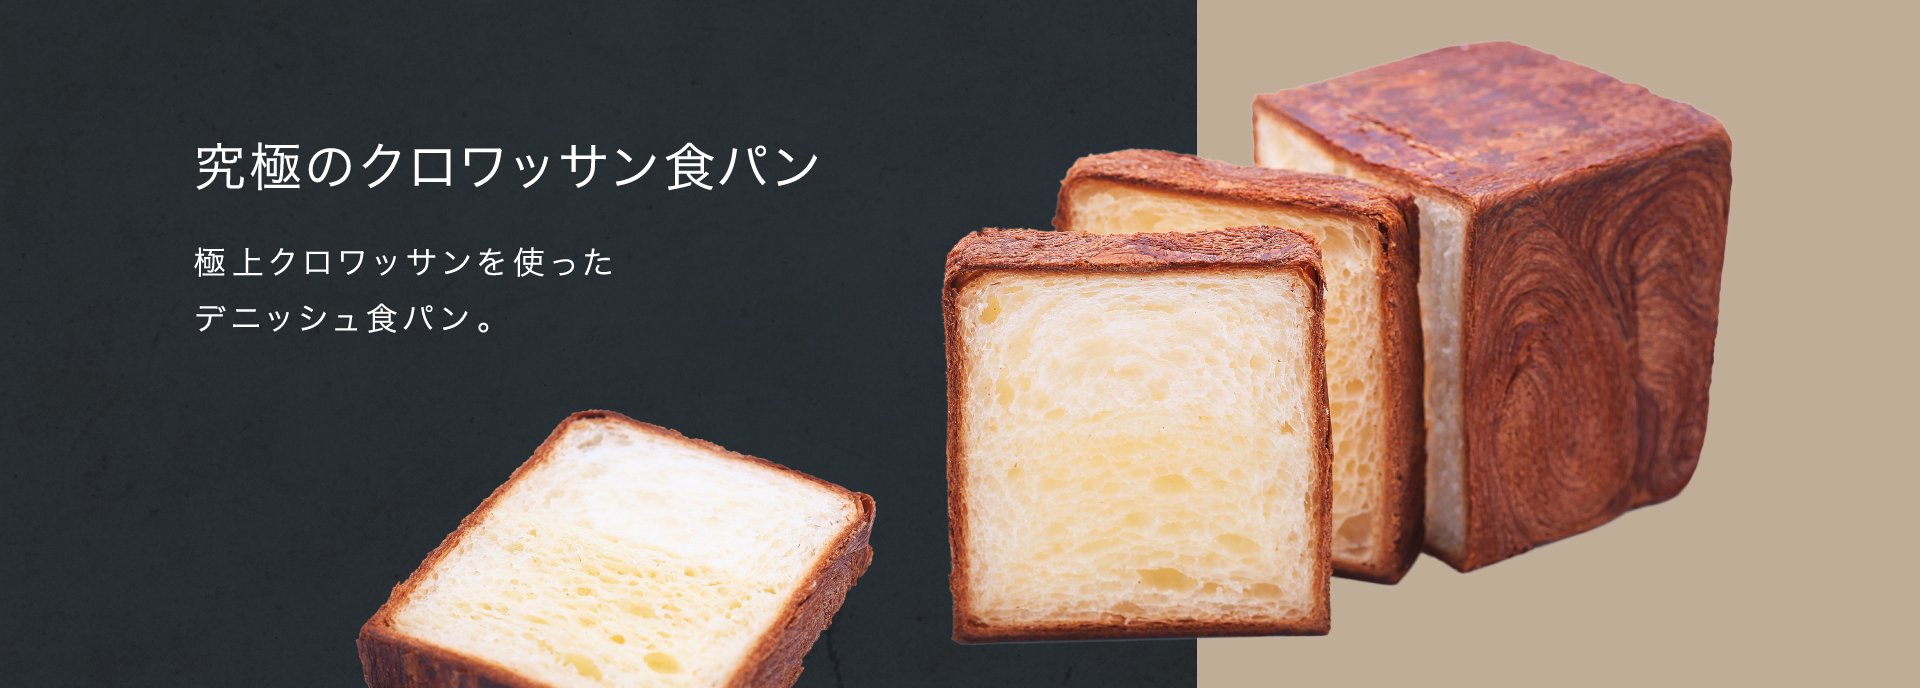 Blanc Pain ブランパン 名古屋 クロワッサンの通販とおいしいパンの販売